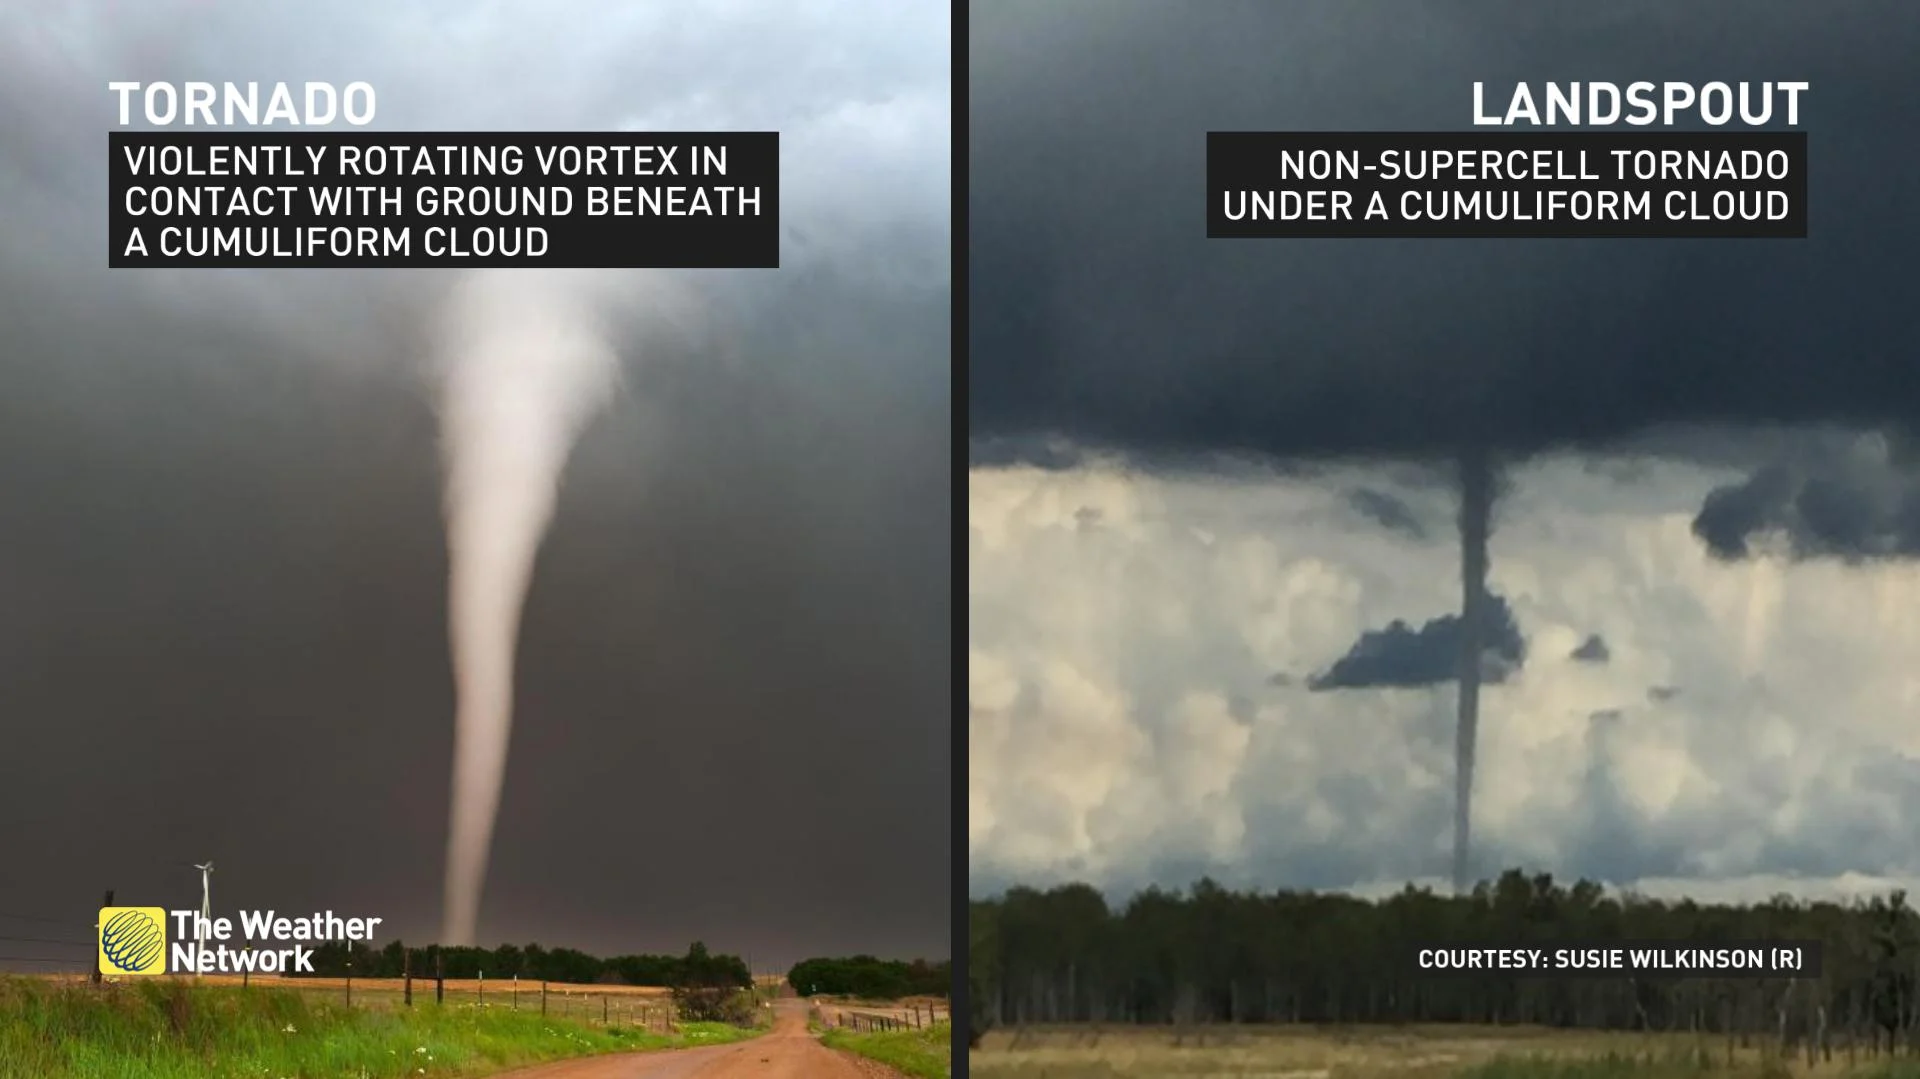 Landspout Tornado Difference